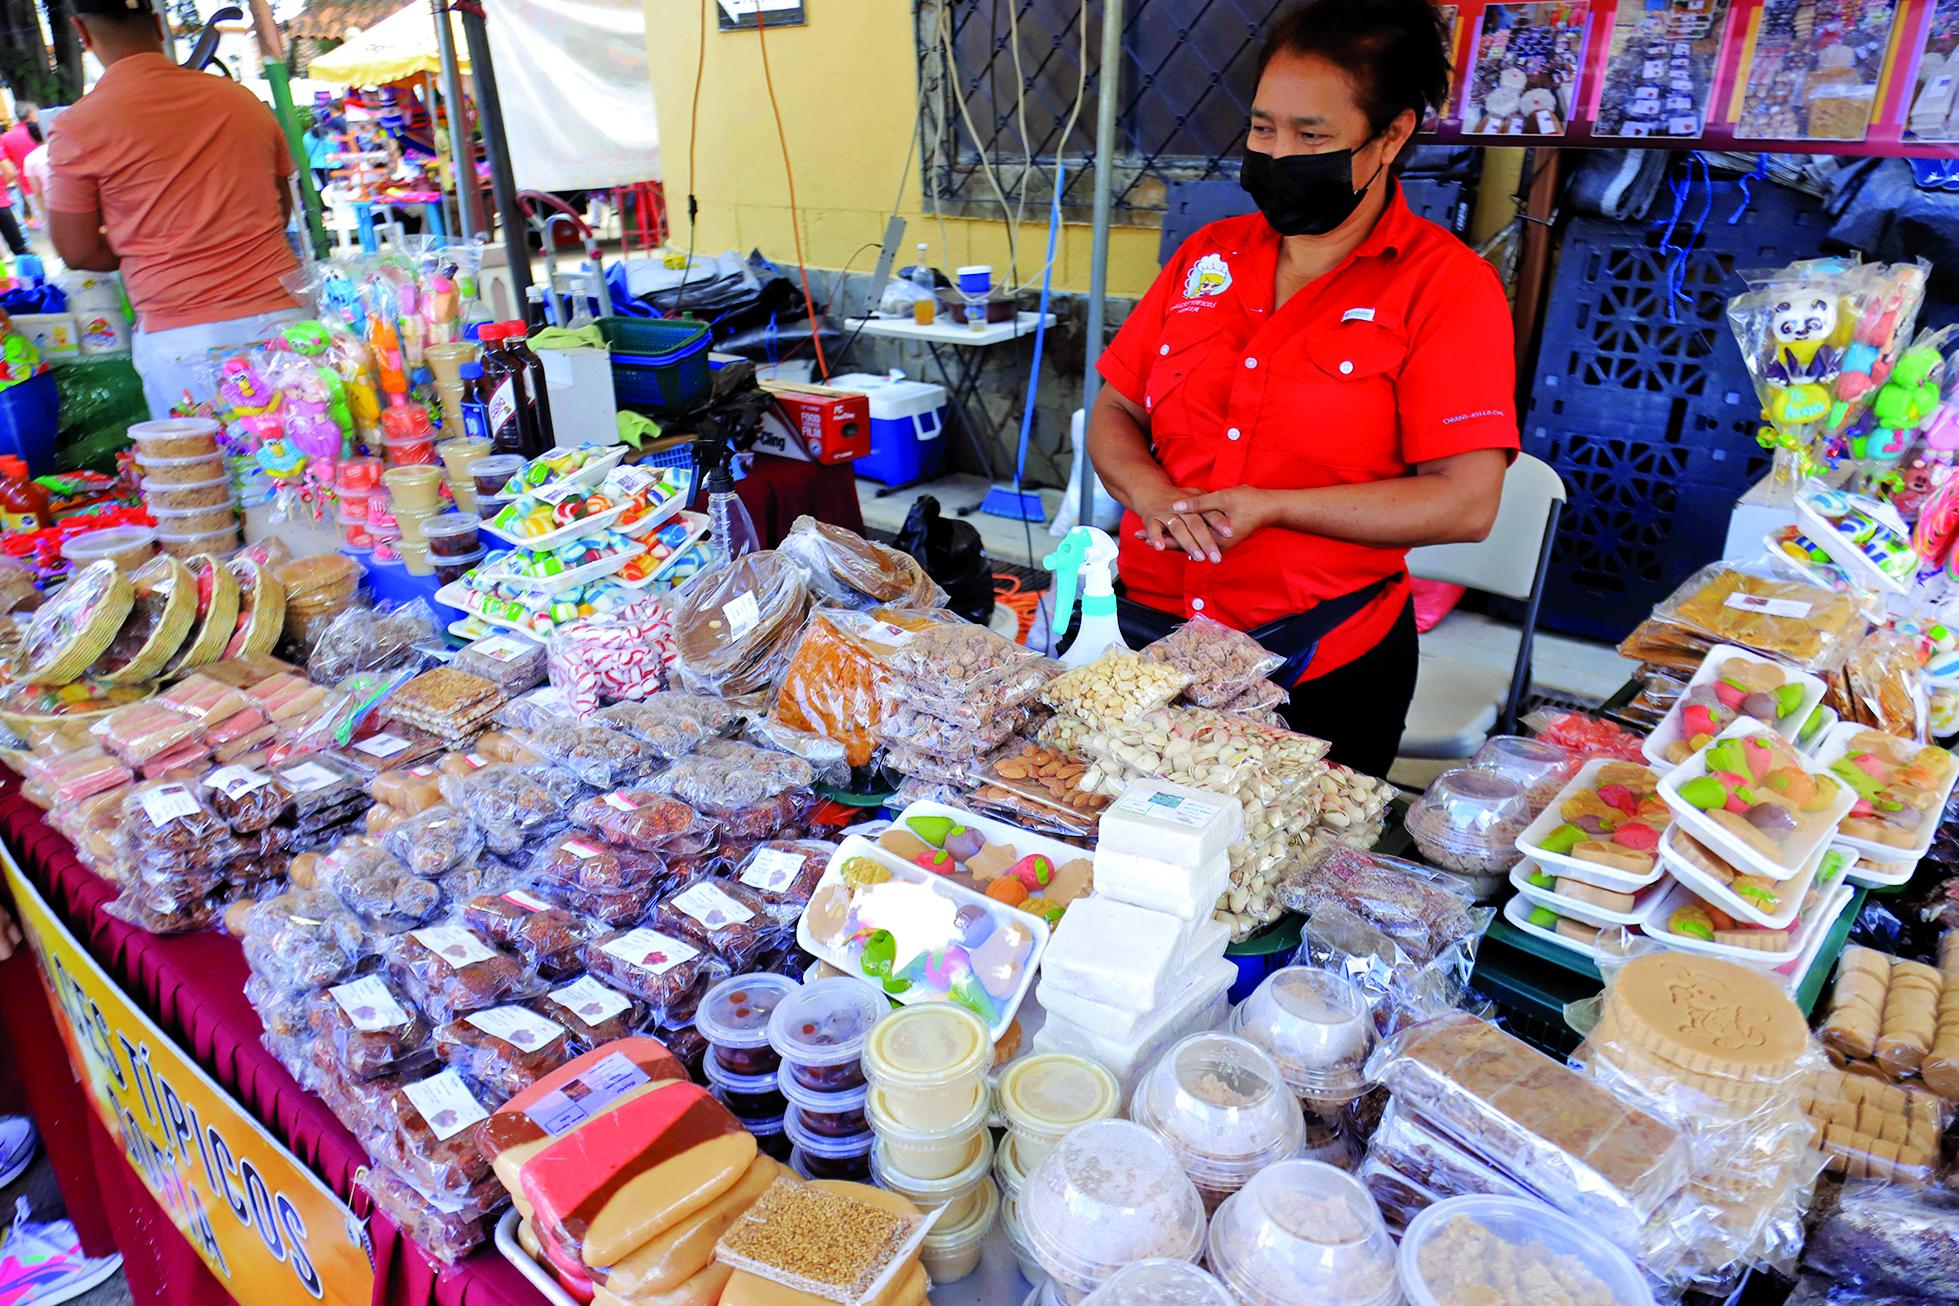 Una emprendedora participa con su negocio de dulces típicos en una feria. Foto: Melvin Cubas.